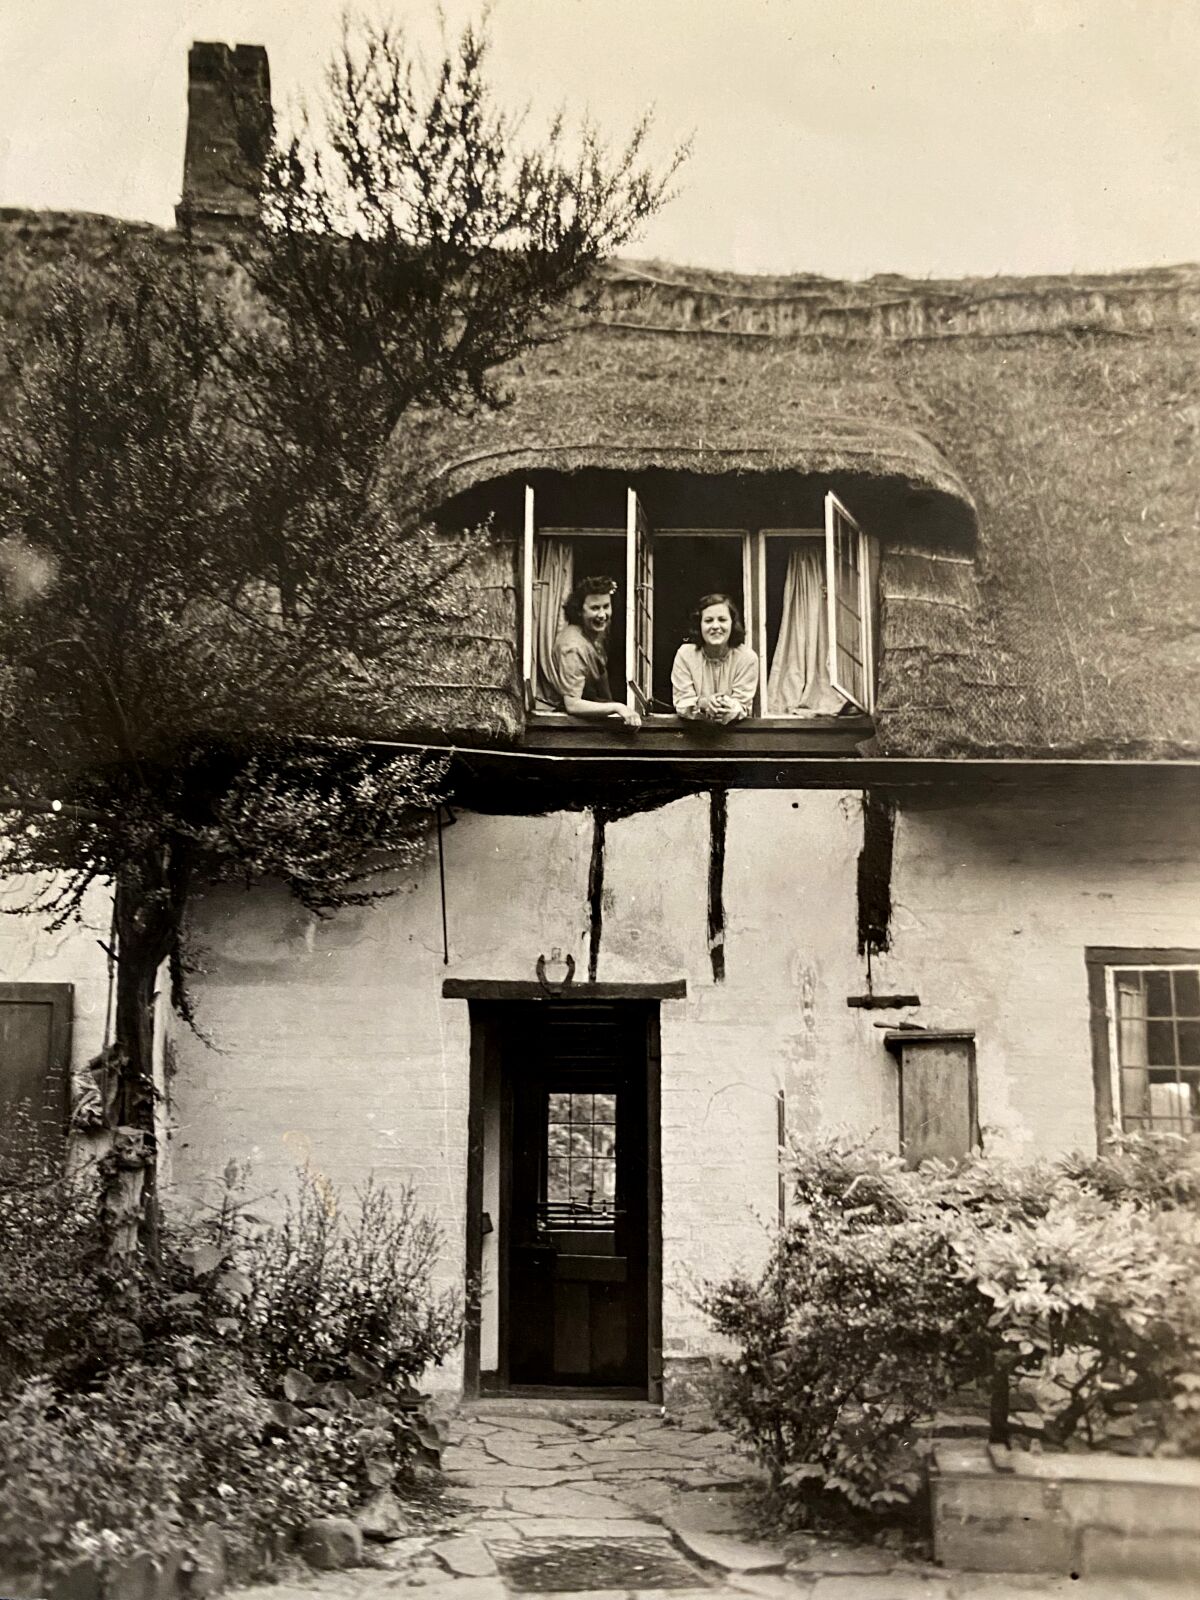 एक घर की ऊपरी मंजिल पर खिड़की से बाहर झुकी हुई दो महिलाओं की श्वेत-श्याम तस्वीर